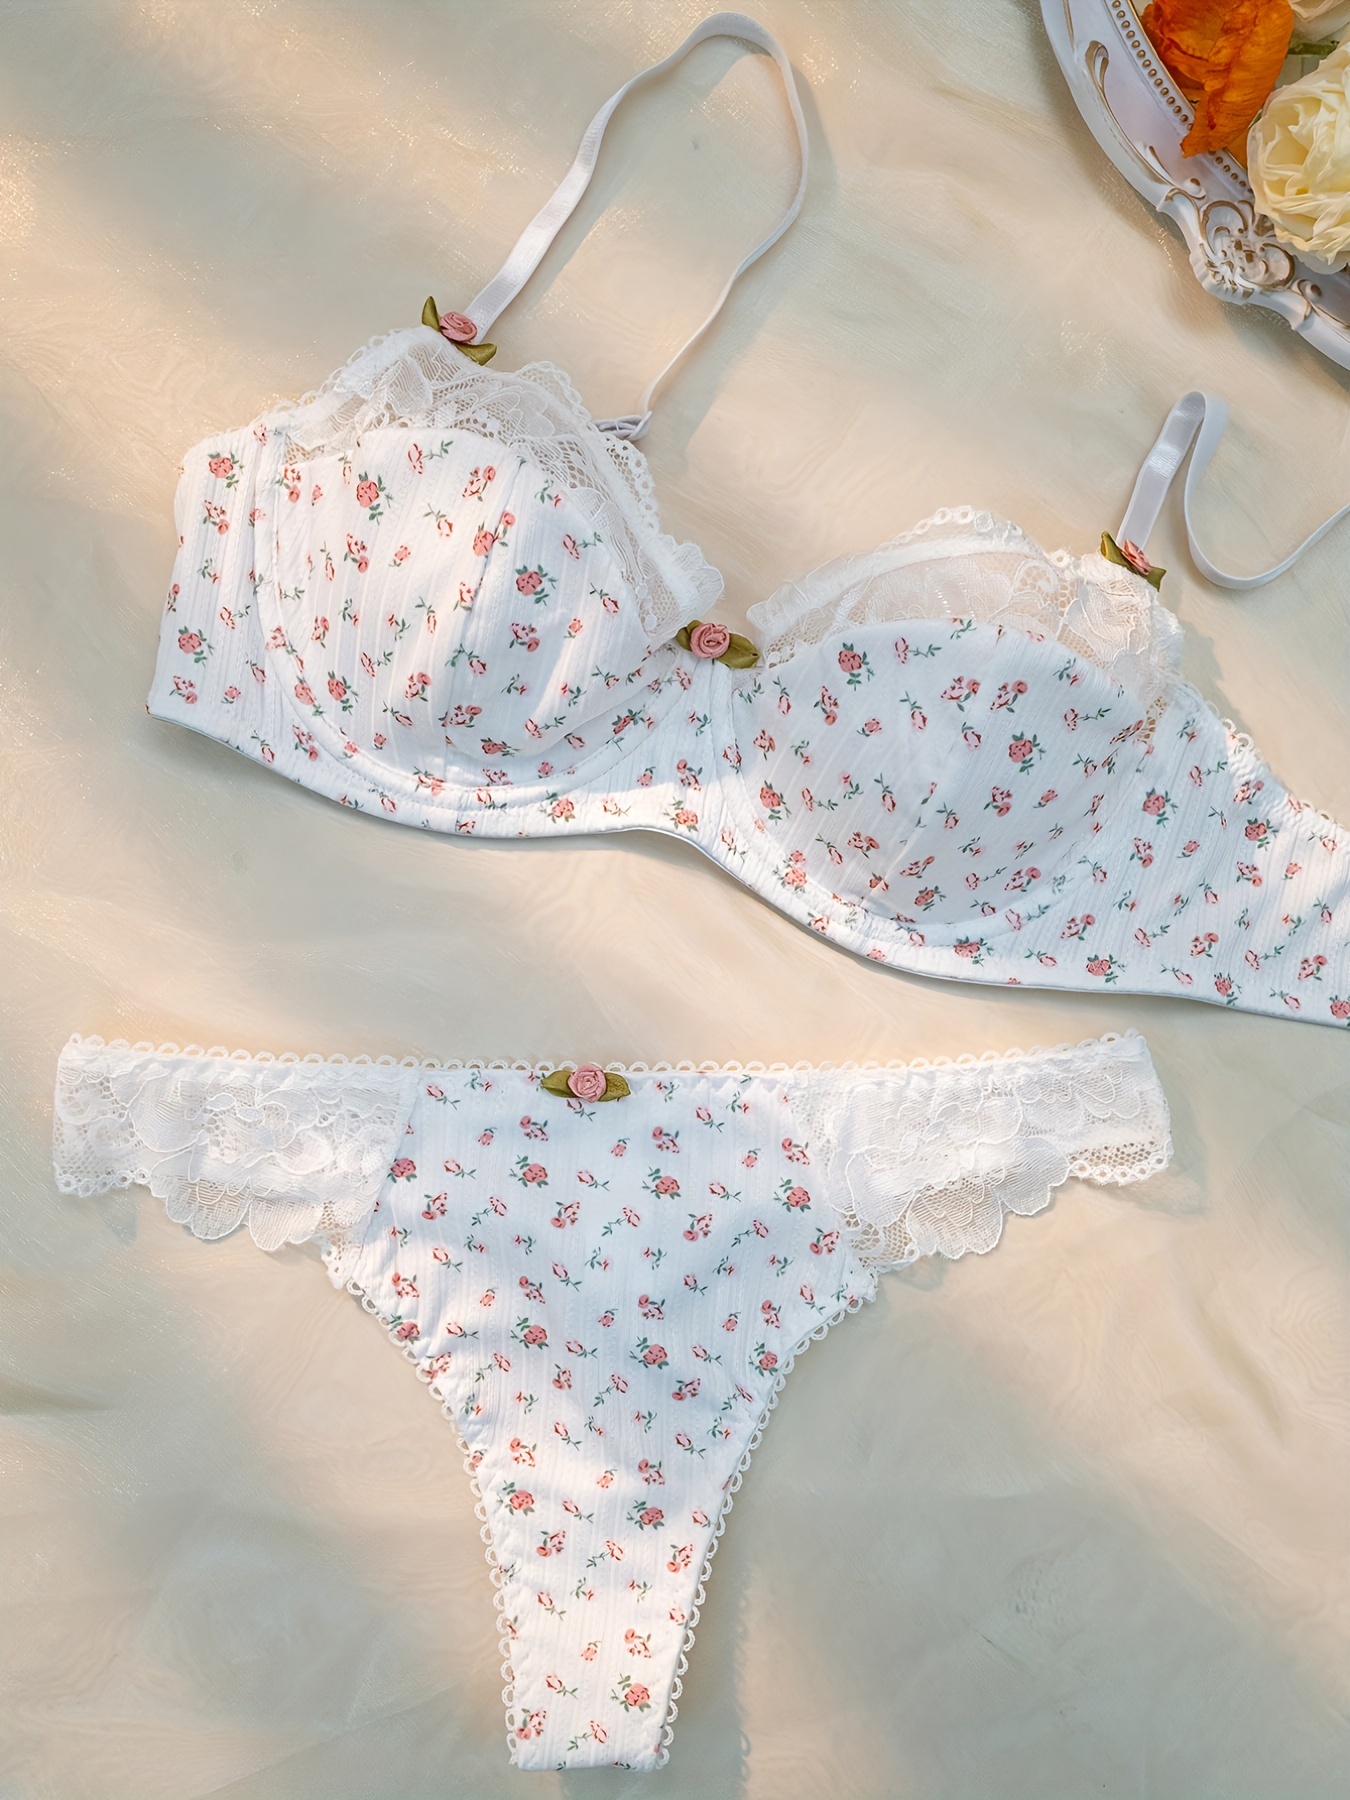 Floral Print Bra & Panties, Cute Push Up Bra & Contrast Lace Thong Lingerie  Set, Women's Lingerie & Underwear